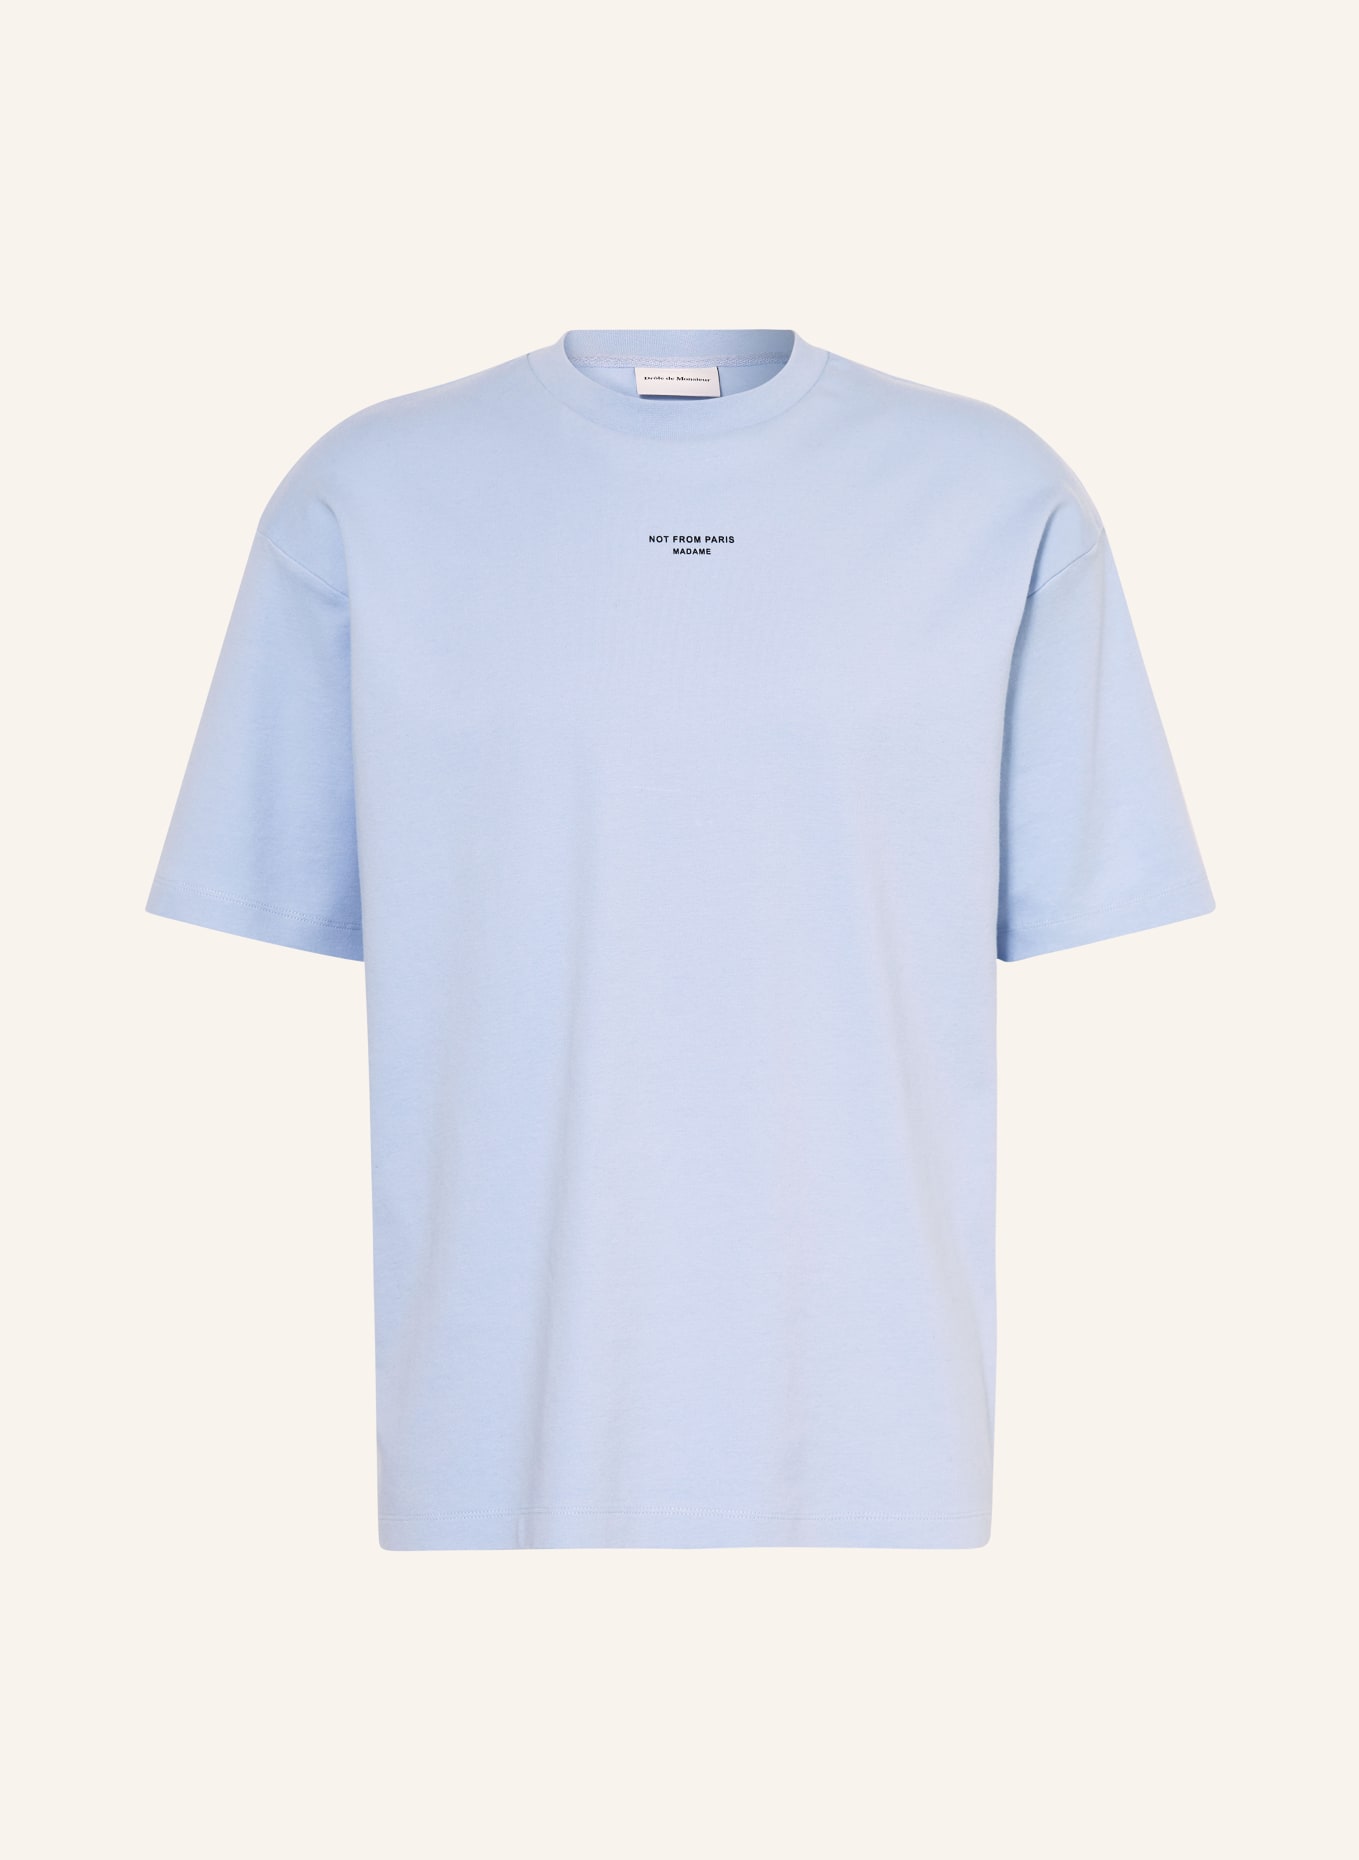 DRÔLE DE MONSIEUR T-shirt, Color: LIGHT BLUE (Image 1)